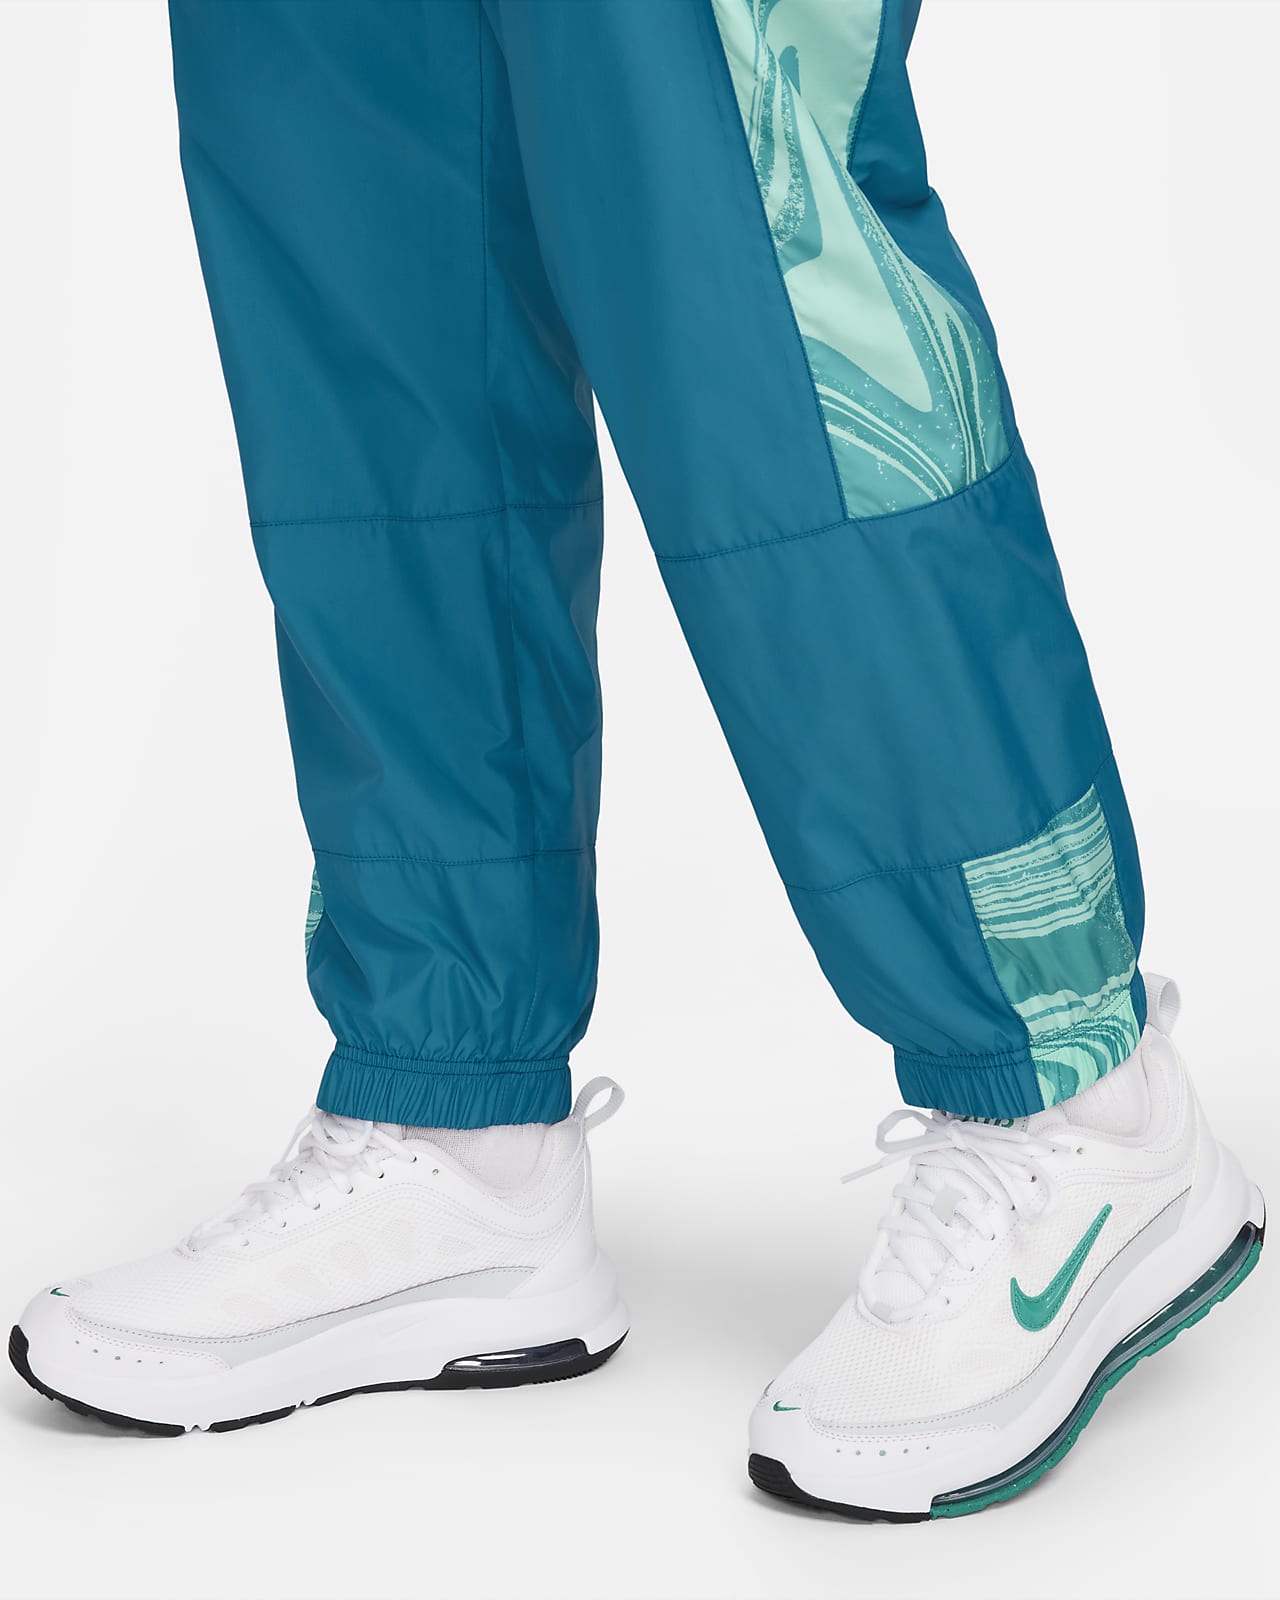 Survêtements Bleus pour Fille. Nike FR